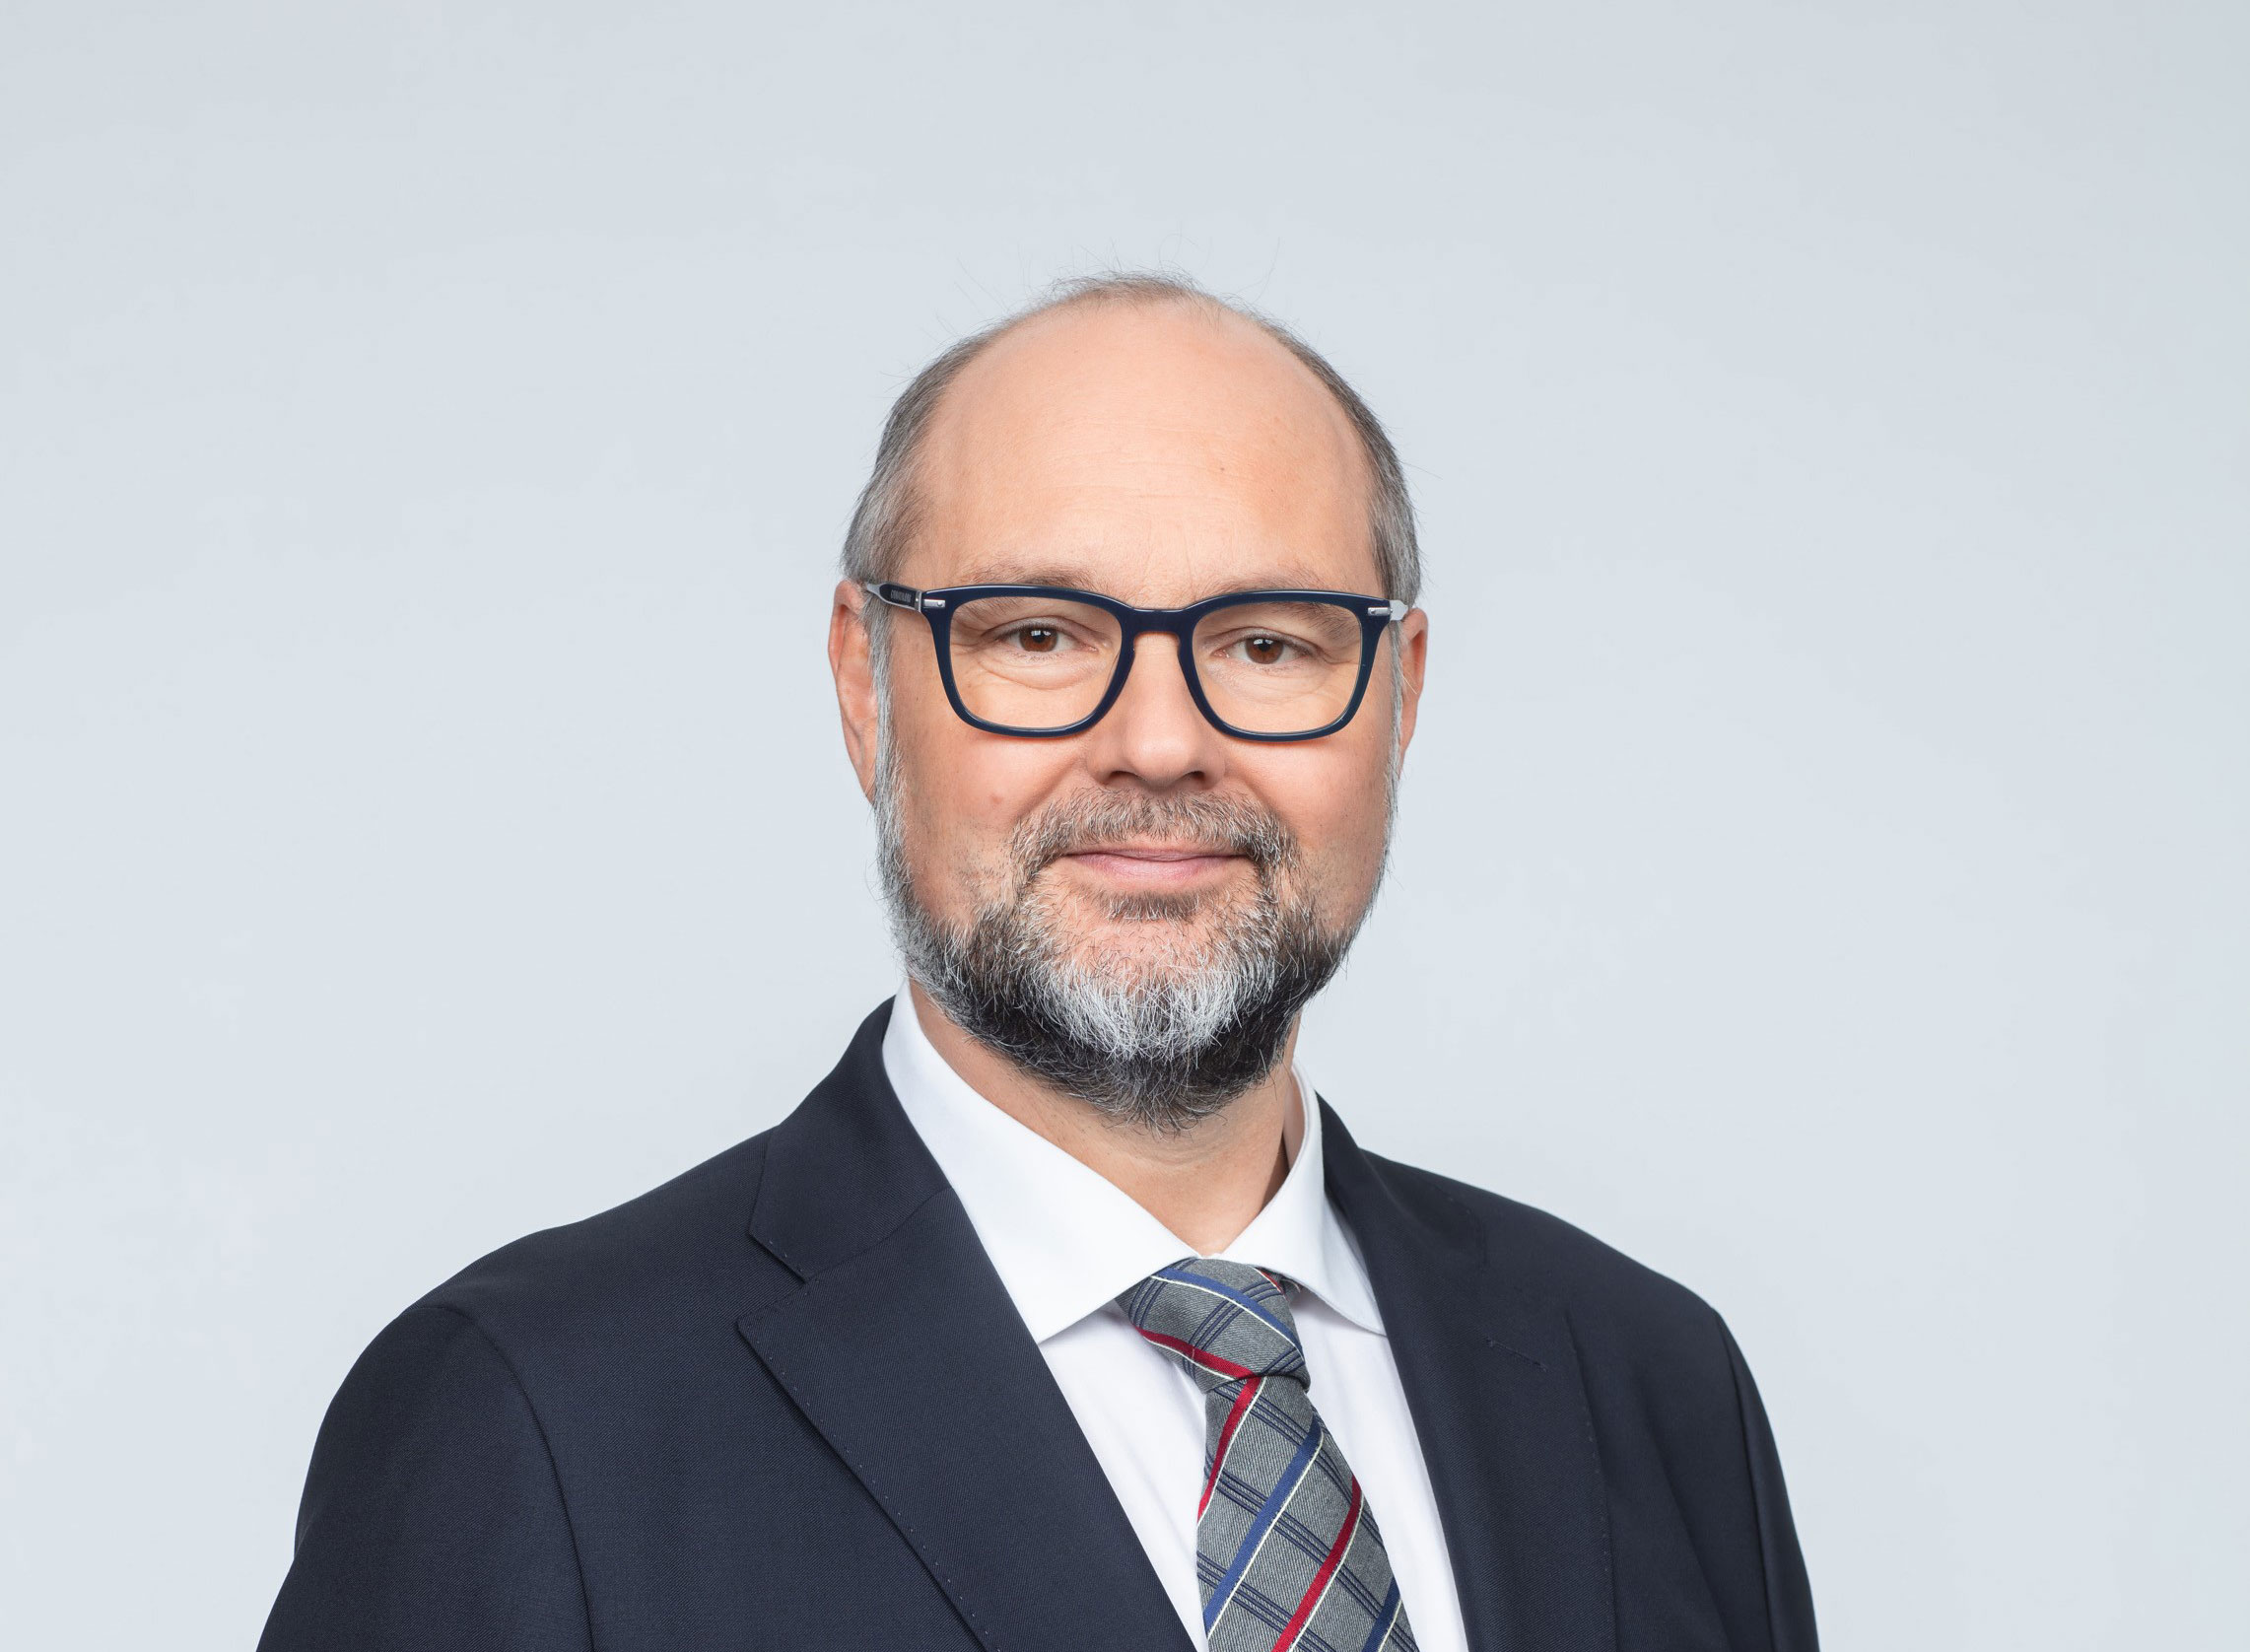 Othmar Lehner wird neuer Direktor mit ESG-Fokus bei KPMG